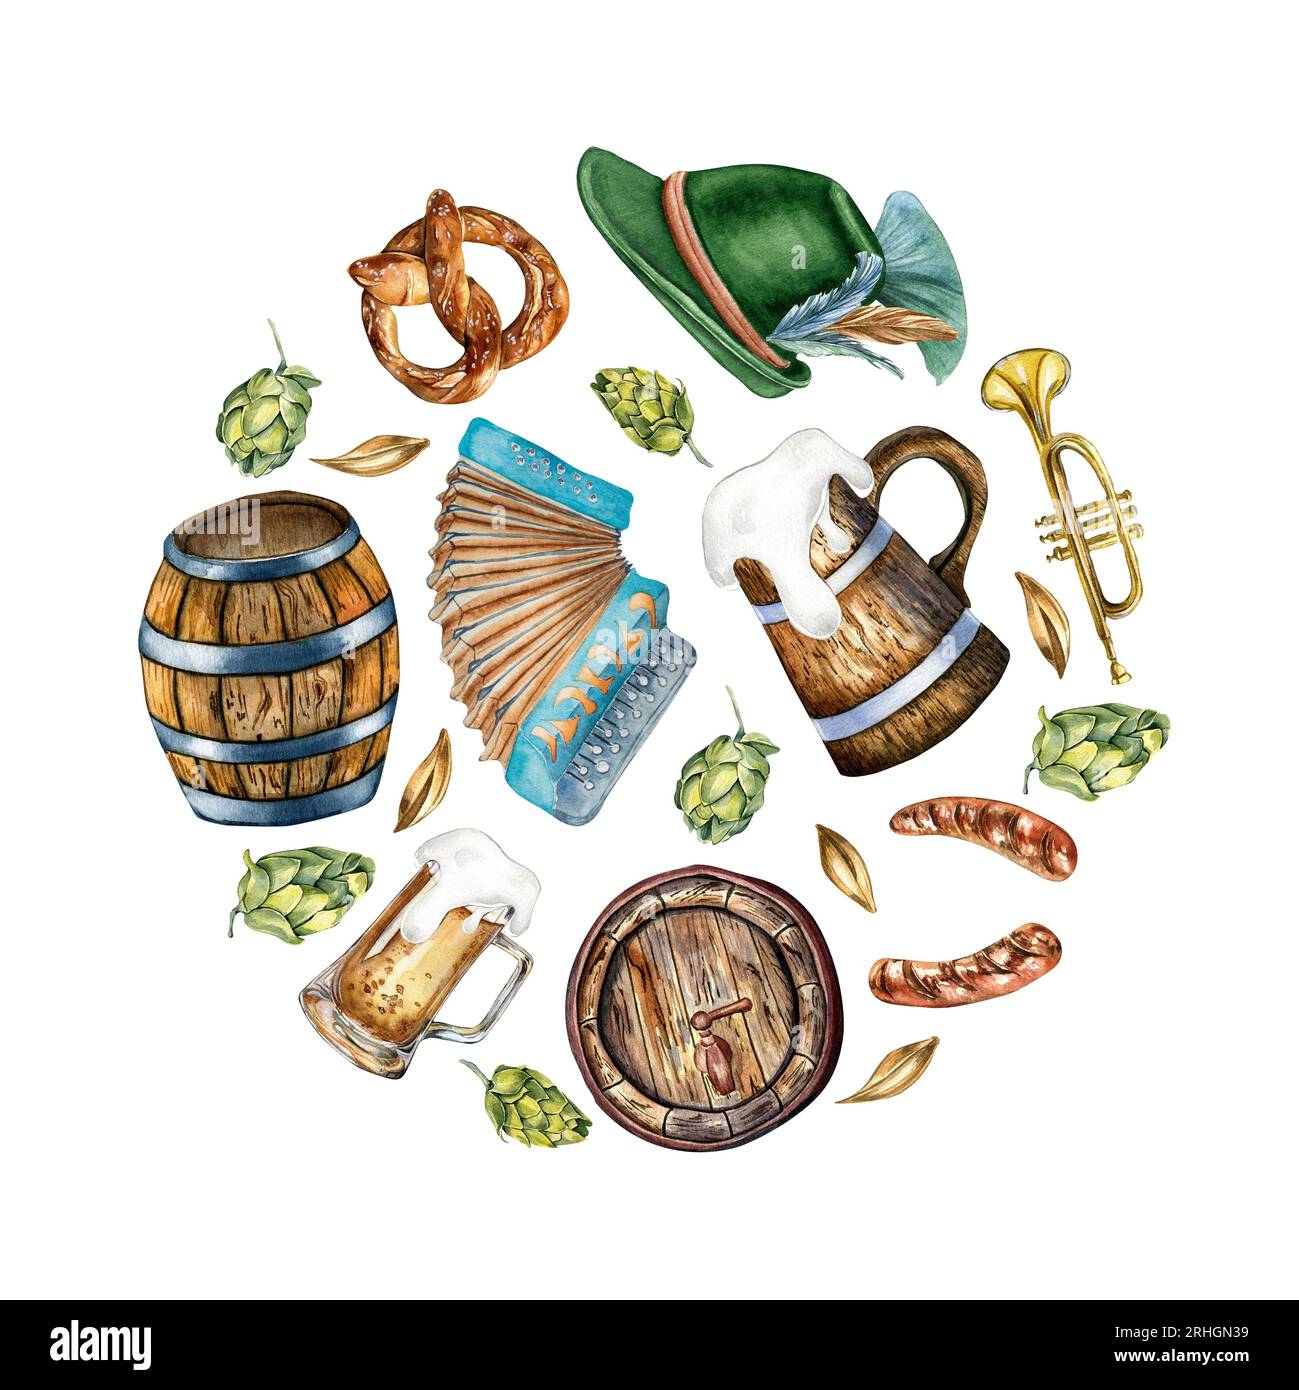 Cercle de tonneau en bois, pinte de bière, chapeau allemand, illustration aquarelle accordéon isolé sur blanc. Bretzel, trompette, bière, houblon tiré à la main Banque D'Images